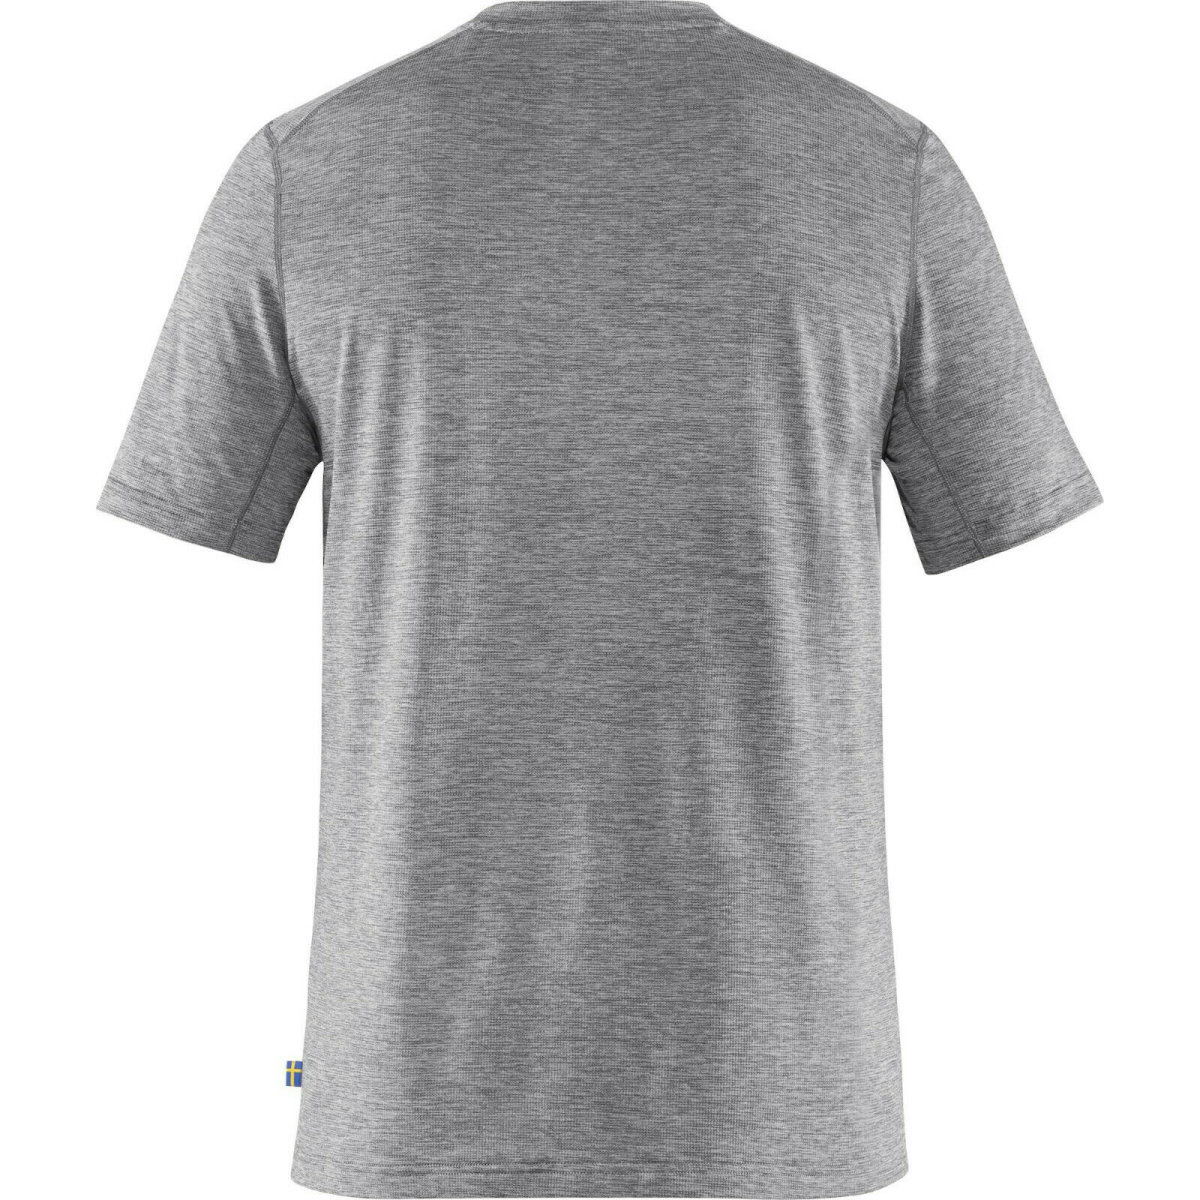 Fj&auml;llr&auml;ven Abisko Day Hike Shirt 87197 shark grey Herren Trekking Funktionsshirt XL